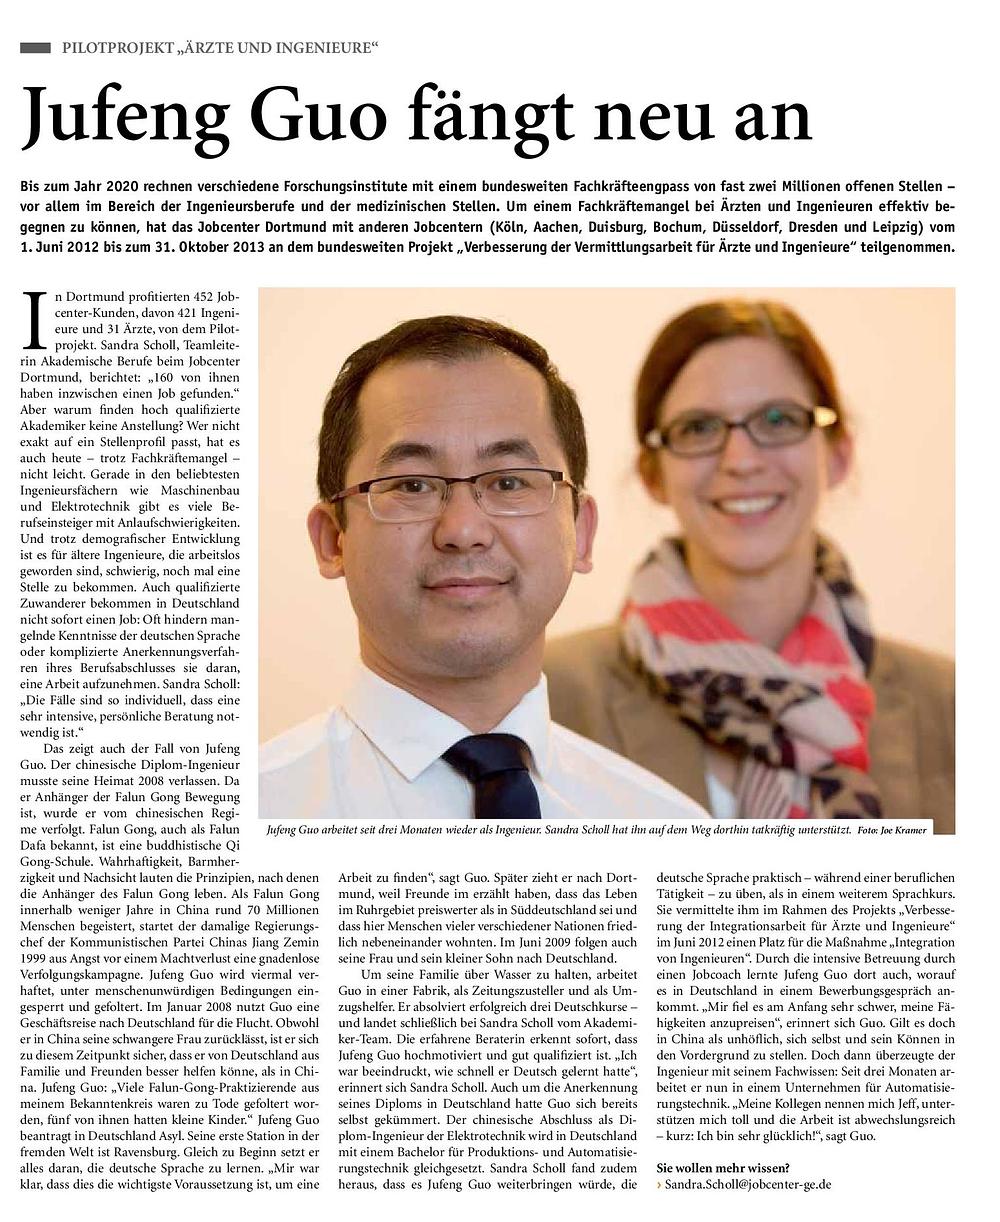 Članak u listu dortmundskog Zavoda za zapošljavanje: "Guo Jufeng, novi početak"
